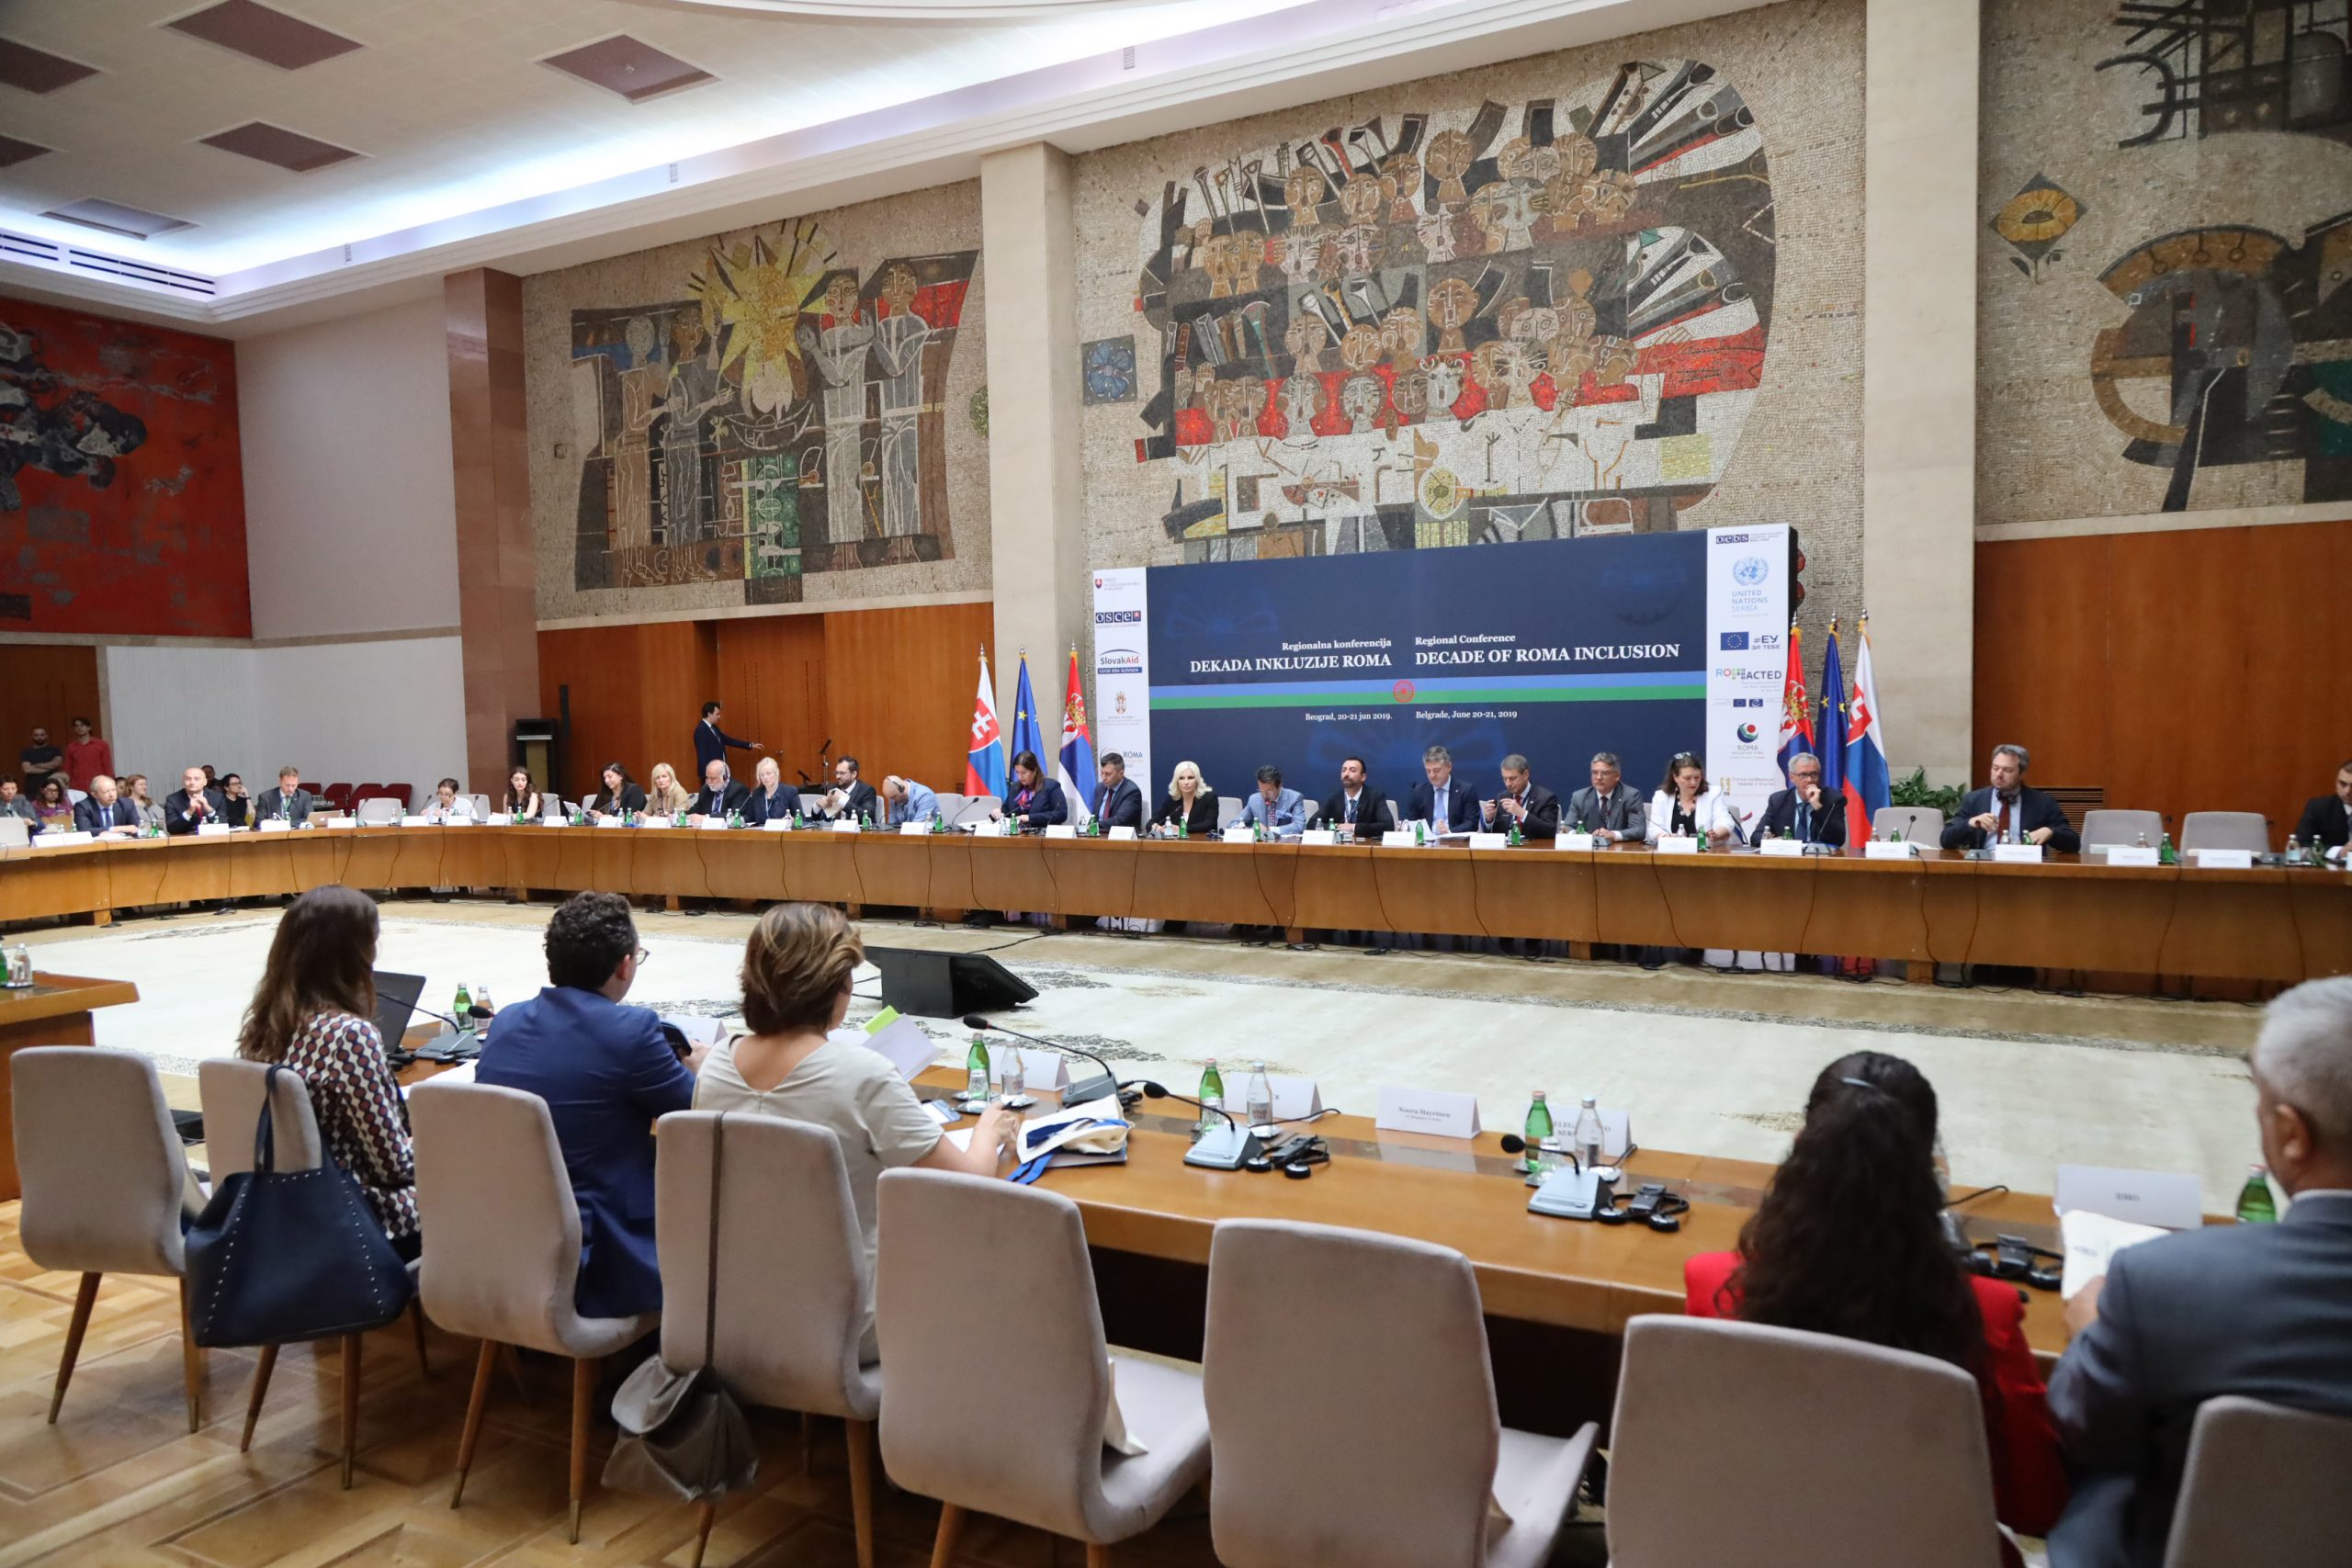 Održana regionalna konferencija o rezultatima „Dekade inkluzije Roma“